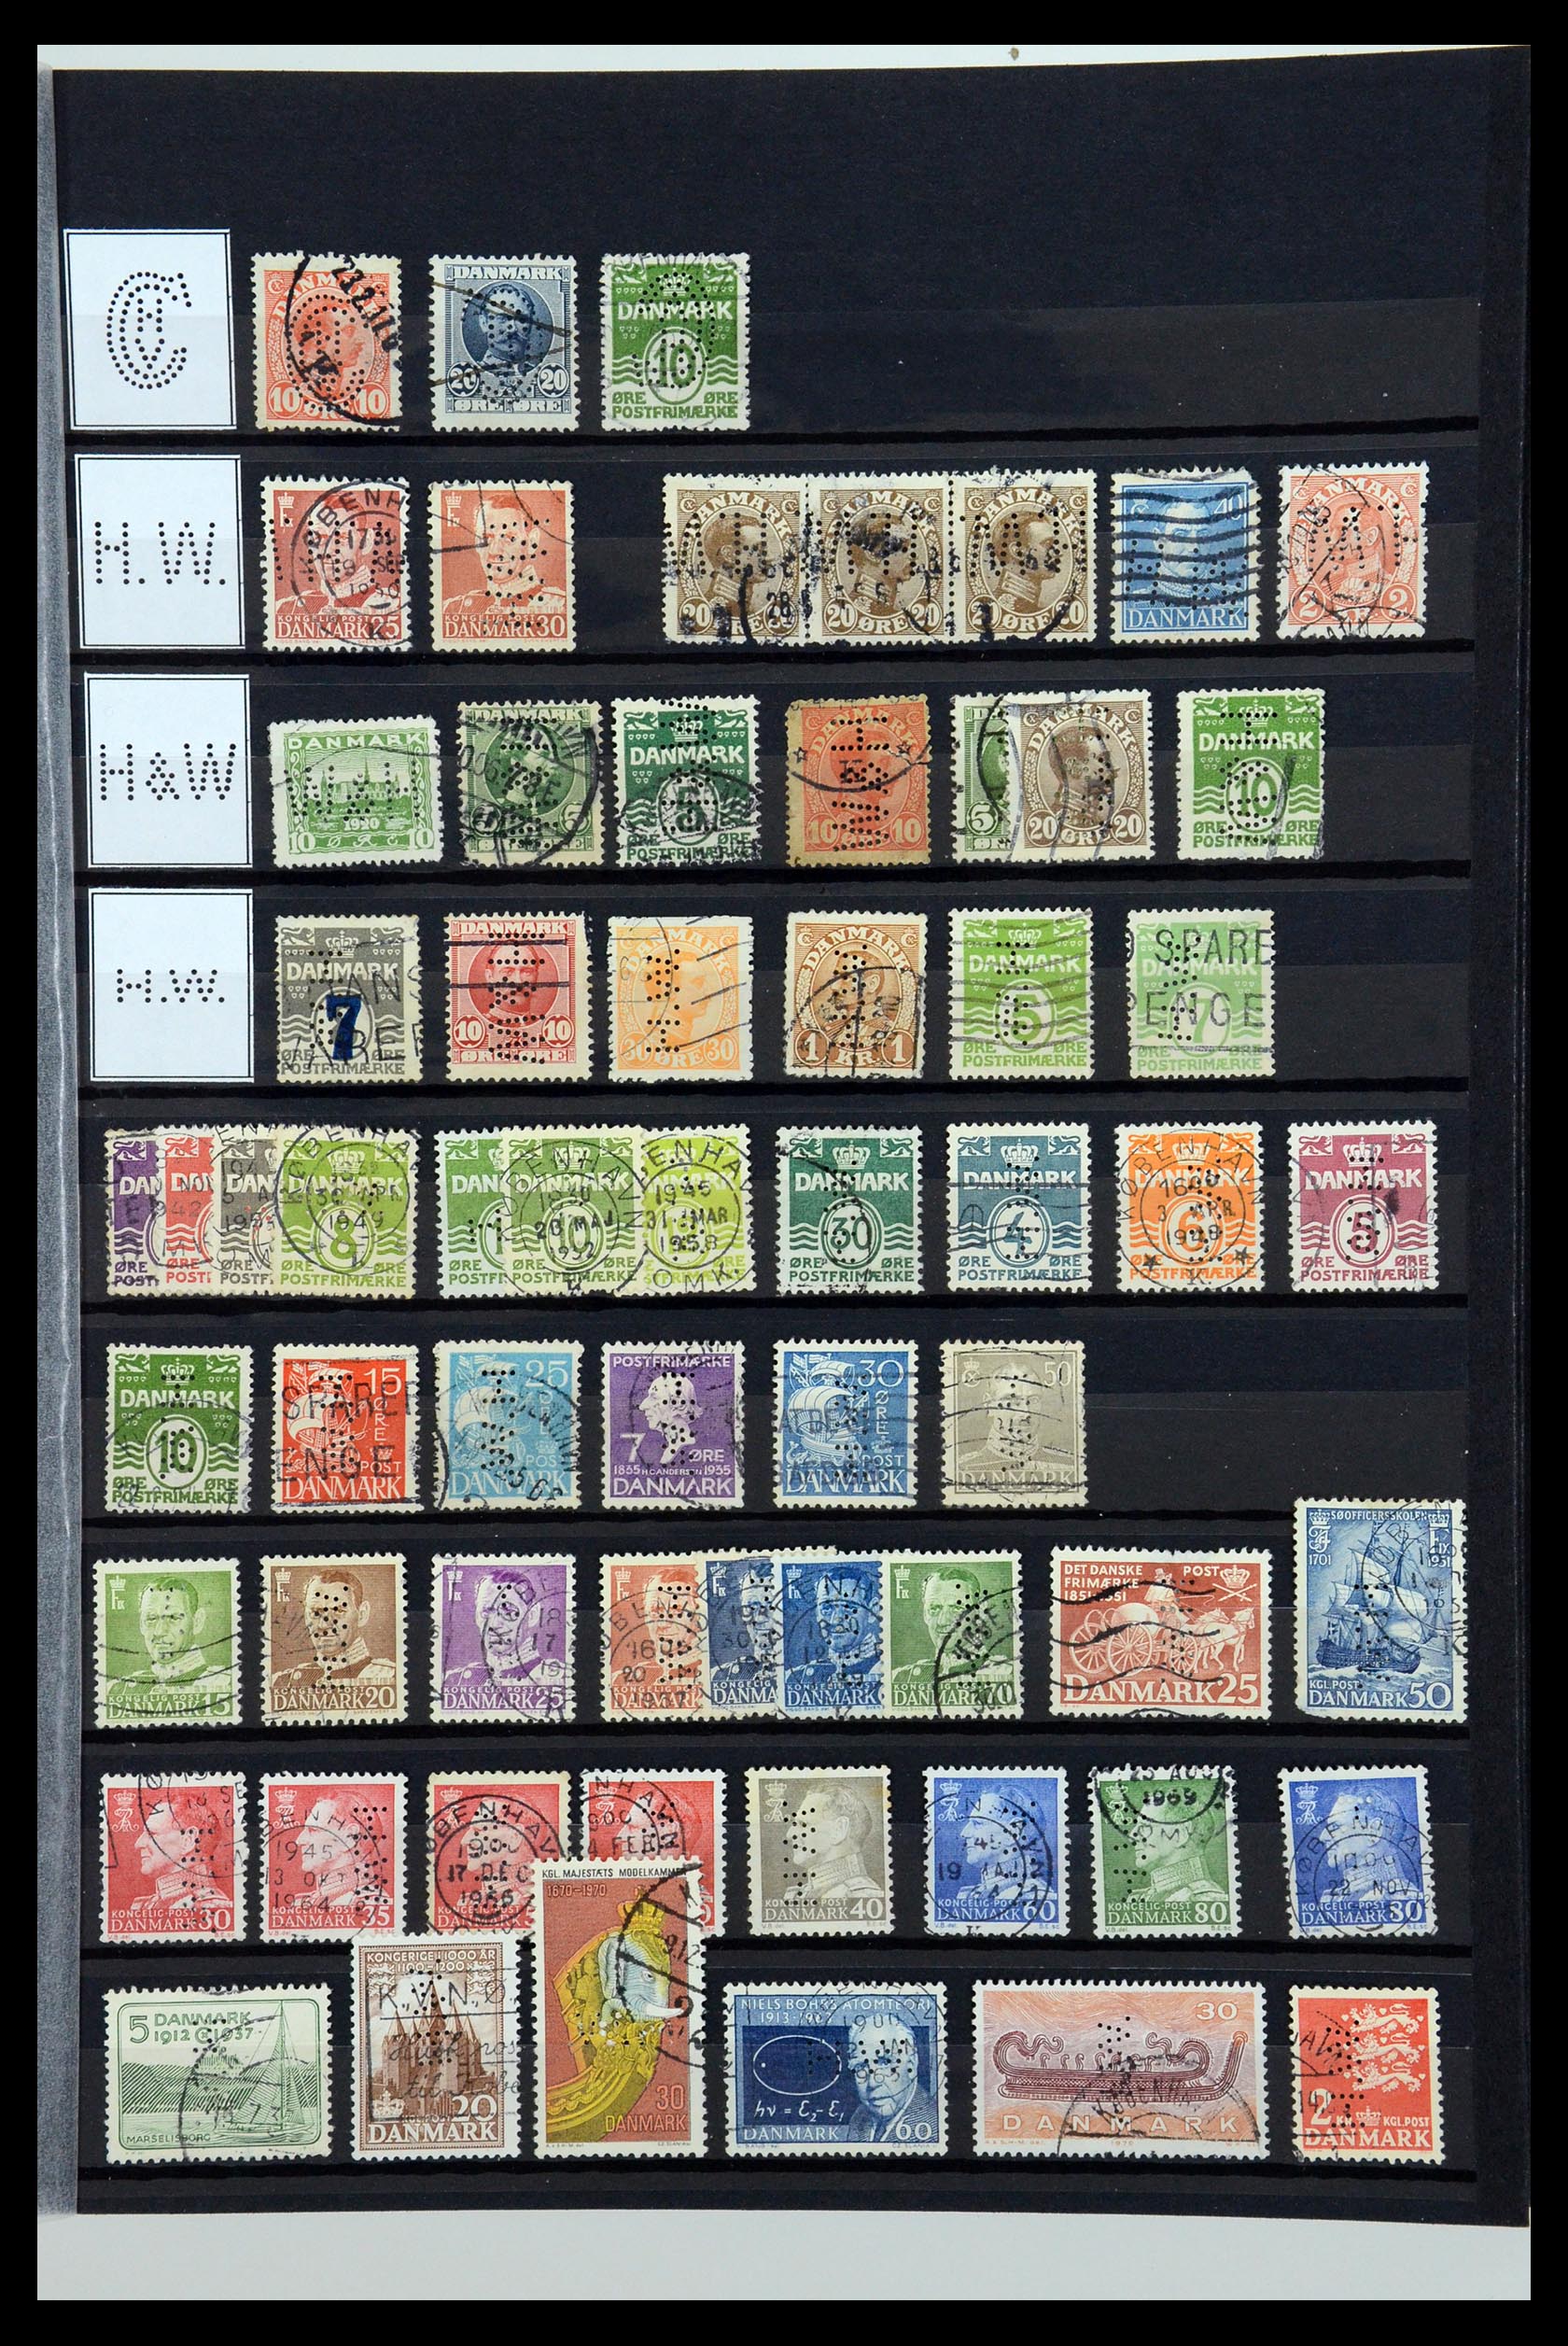 36396 137 - Postzegelverzameling 36396 Denemarken perfins.